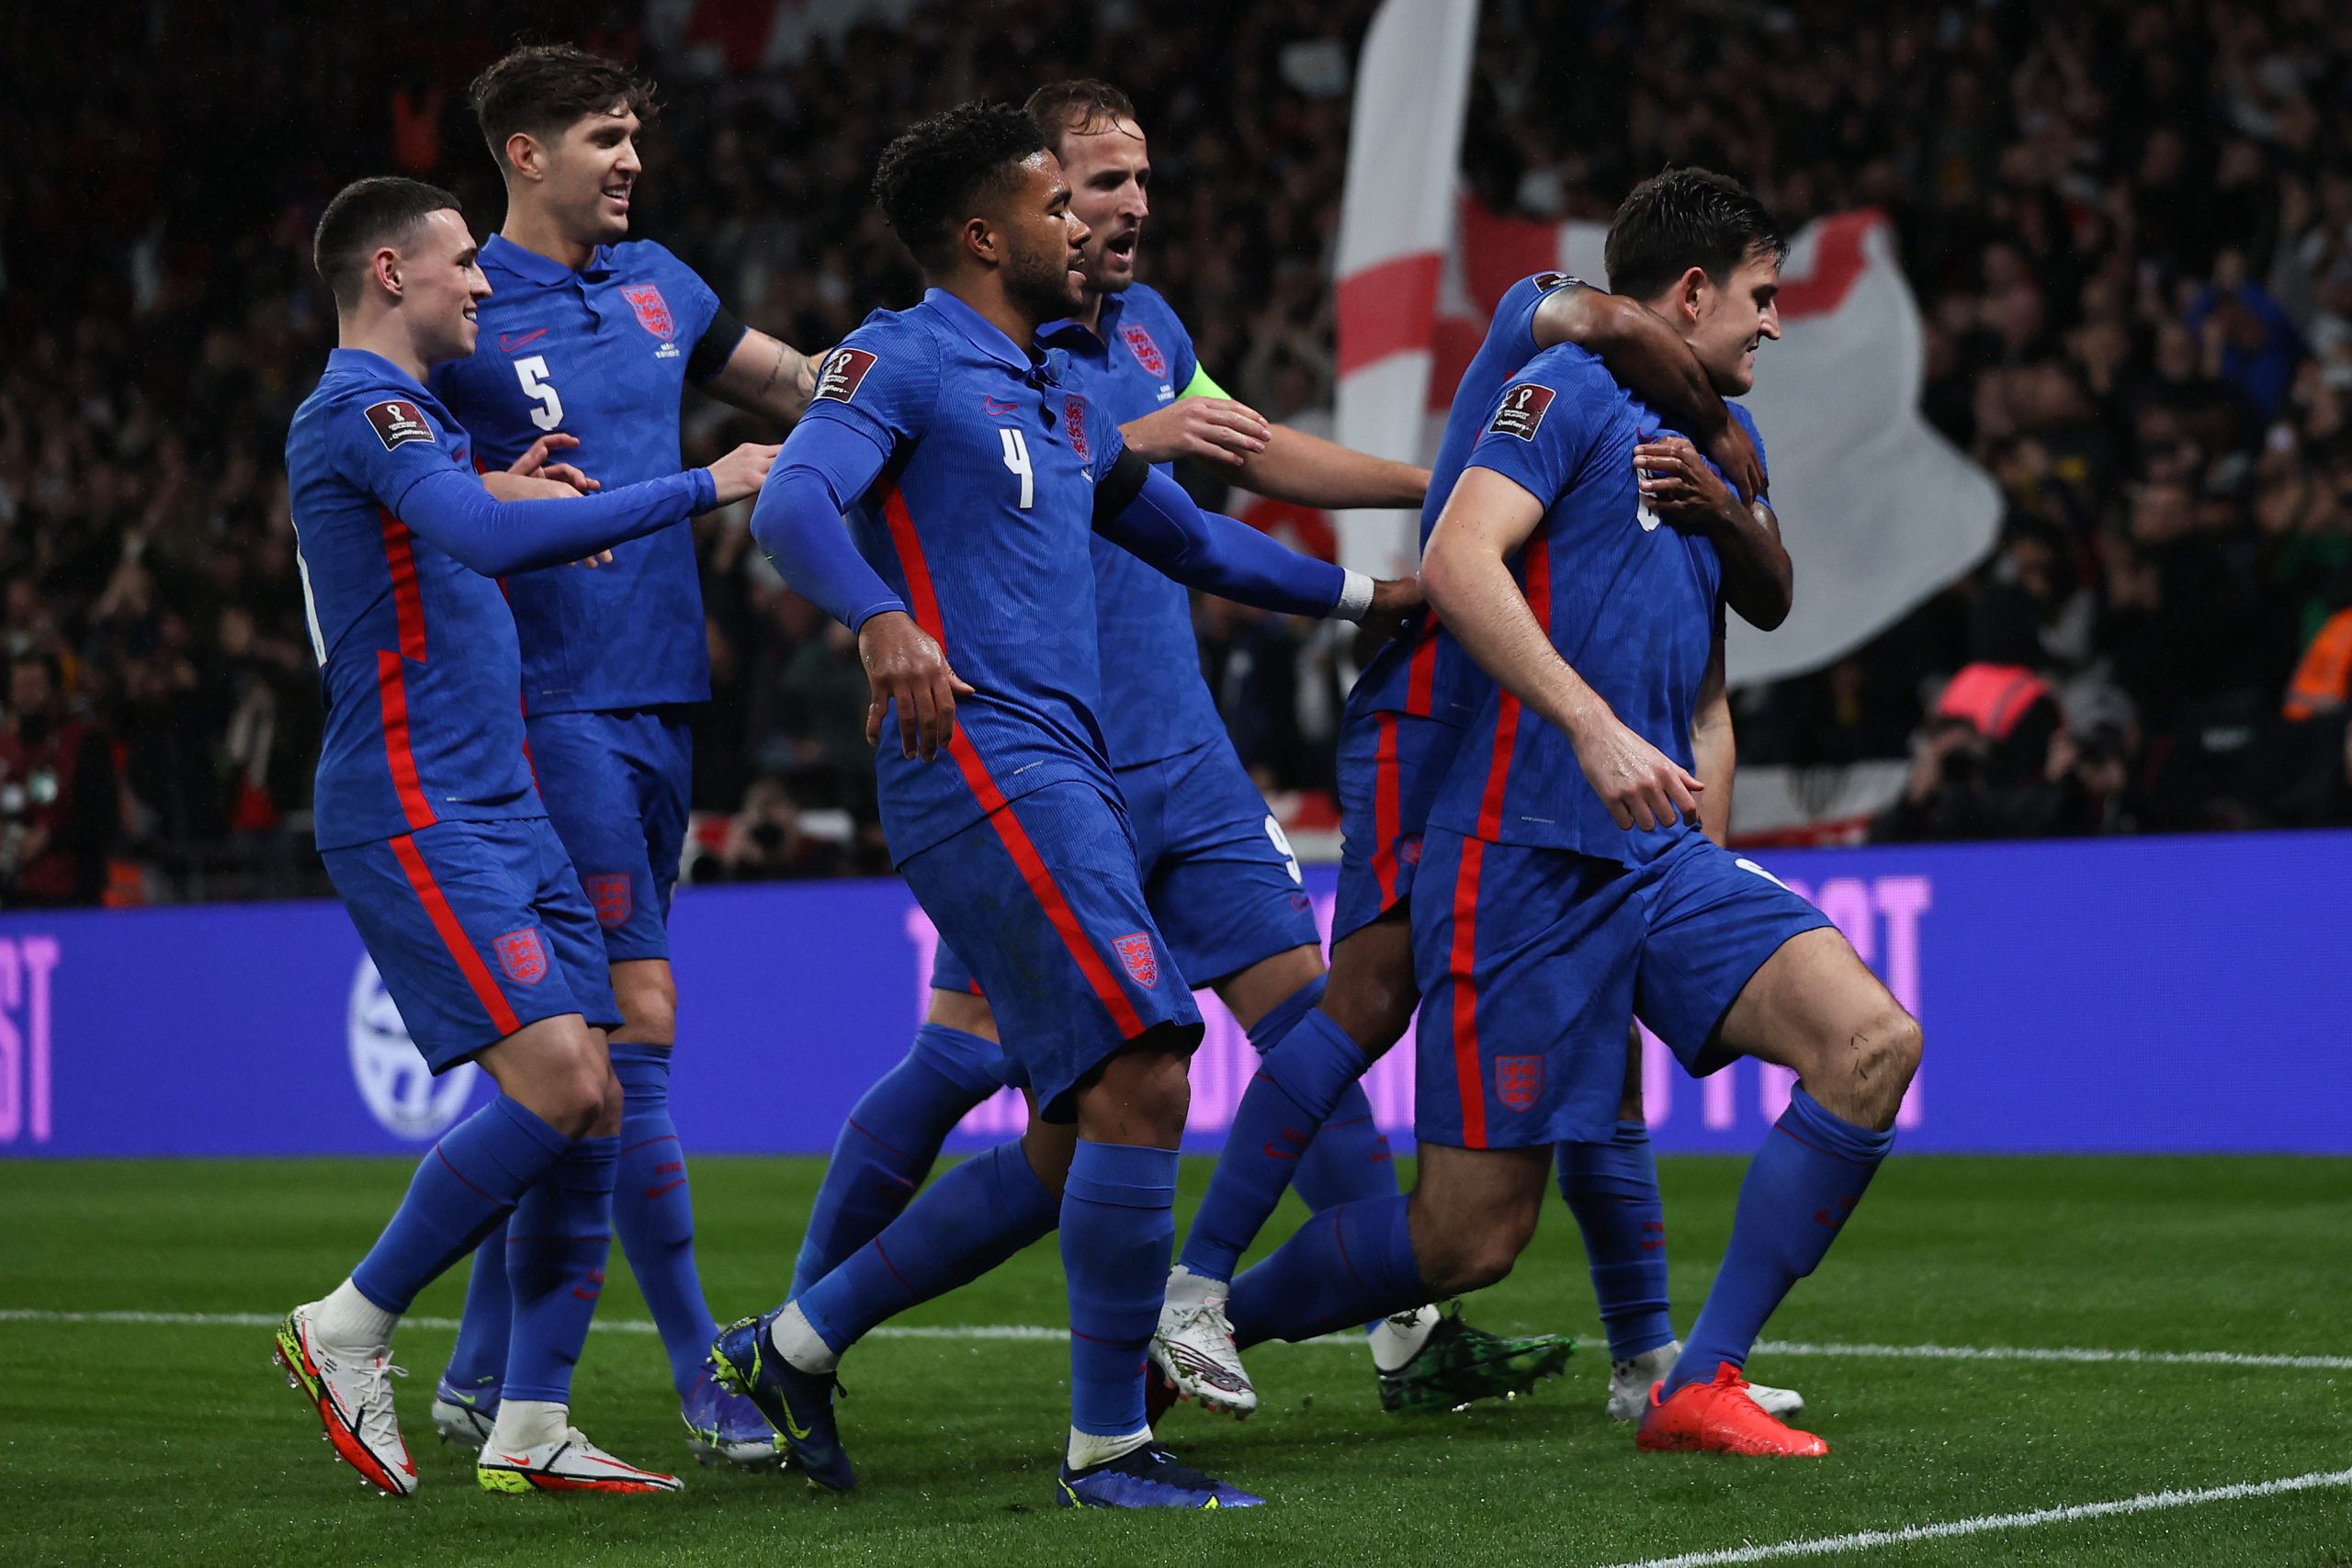 منتخب إنجلترا يتأهل لمونديال كأس العالم 2022 و منتخب إيطاليا يتعثر أمام سويسرا بالخسارة بهدف نظيف watanserb.com